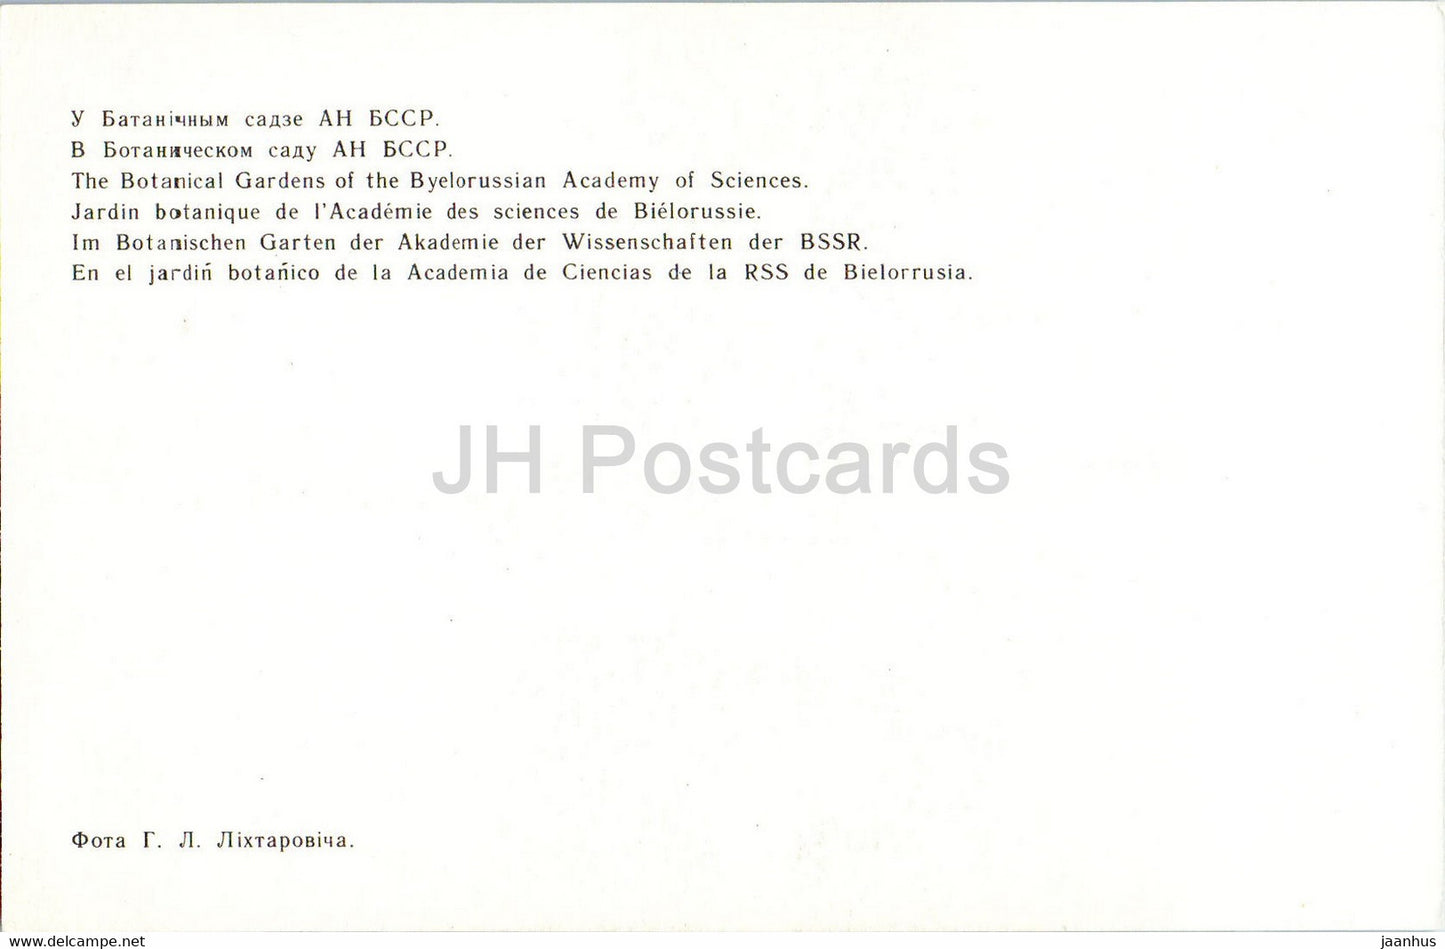 Minsk - Jardins botaniques de l'Académie des sciences de Biélorussie - oiseaux - cygne - 1977 - Biélorussie URSS - inutilisé